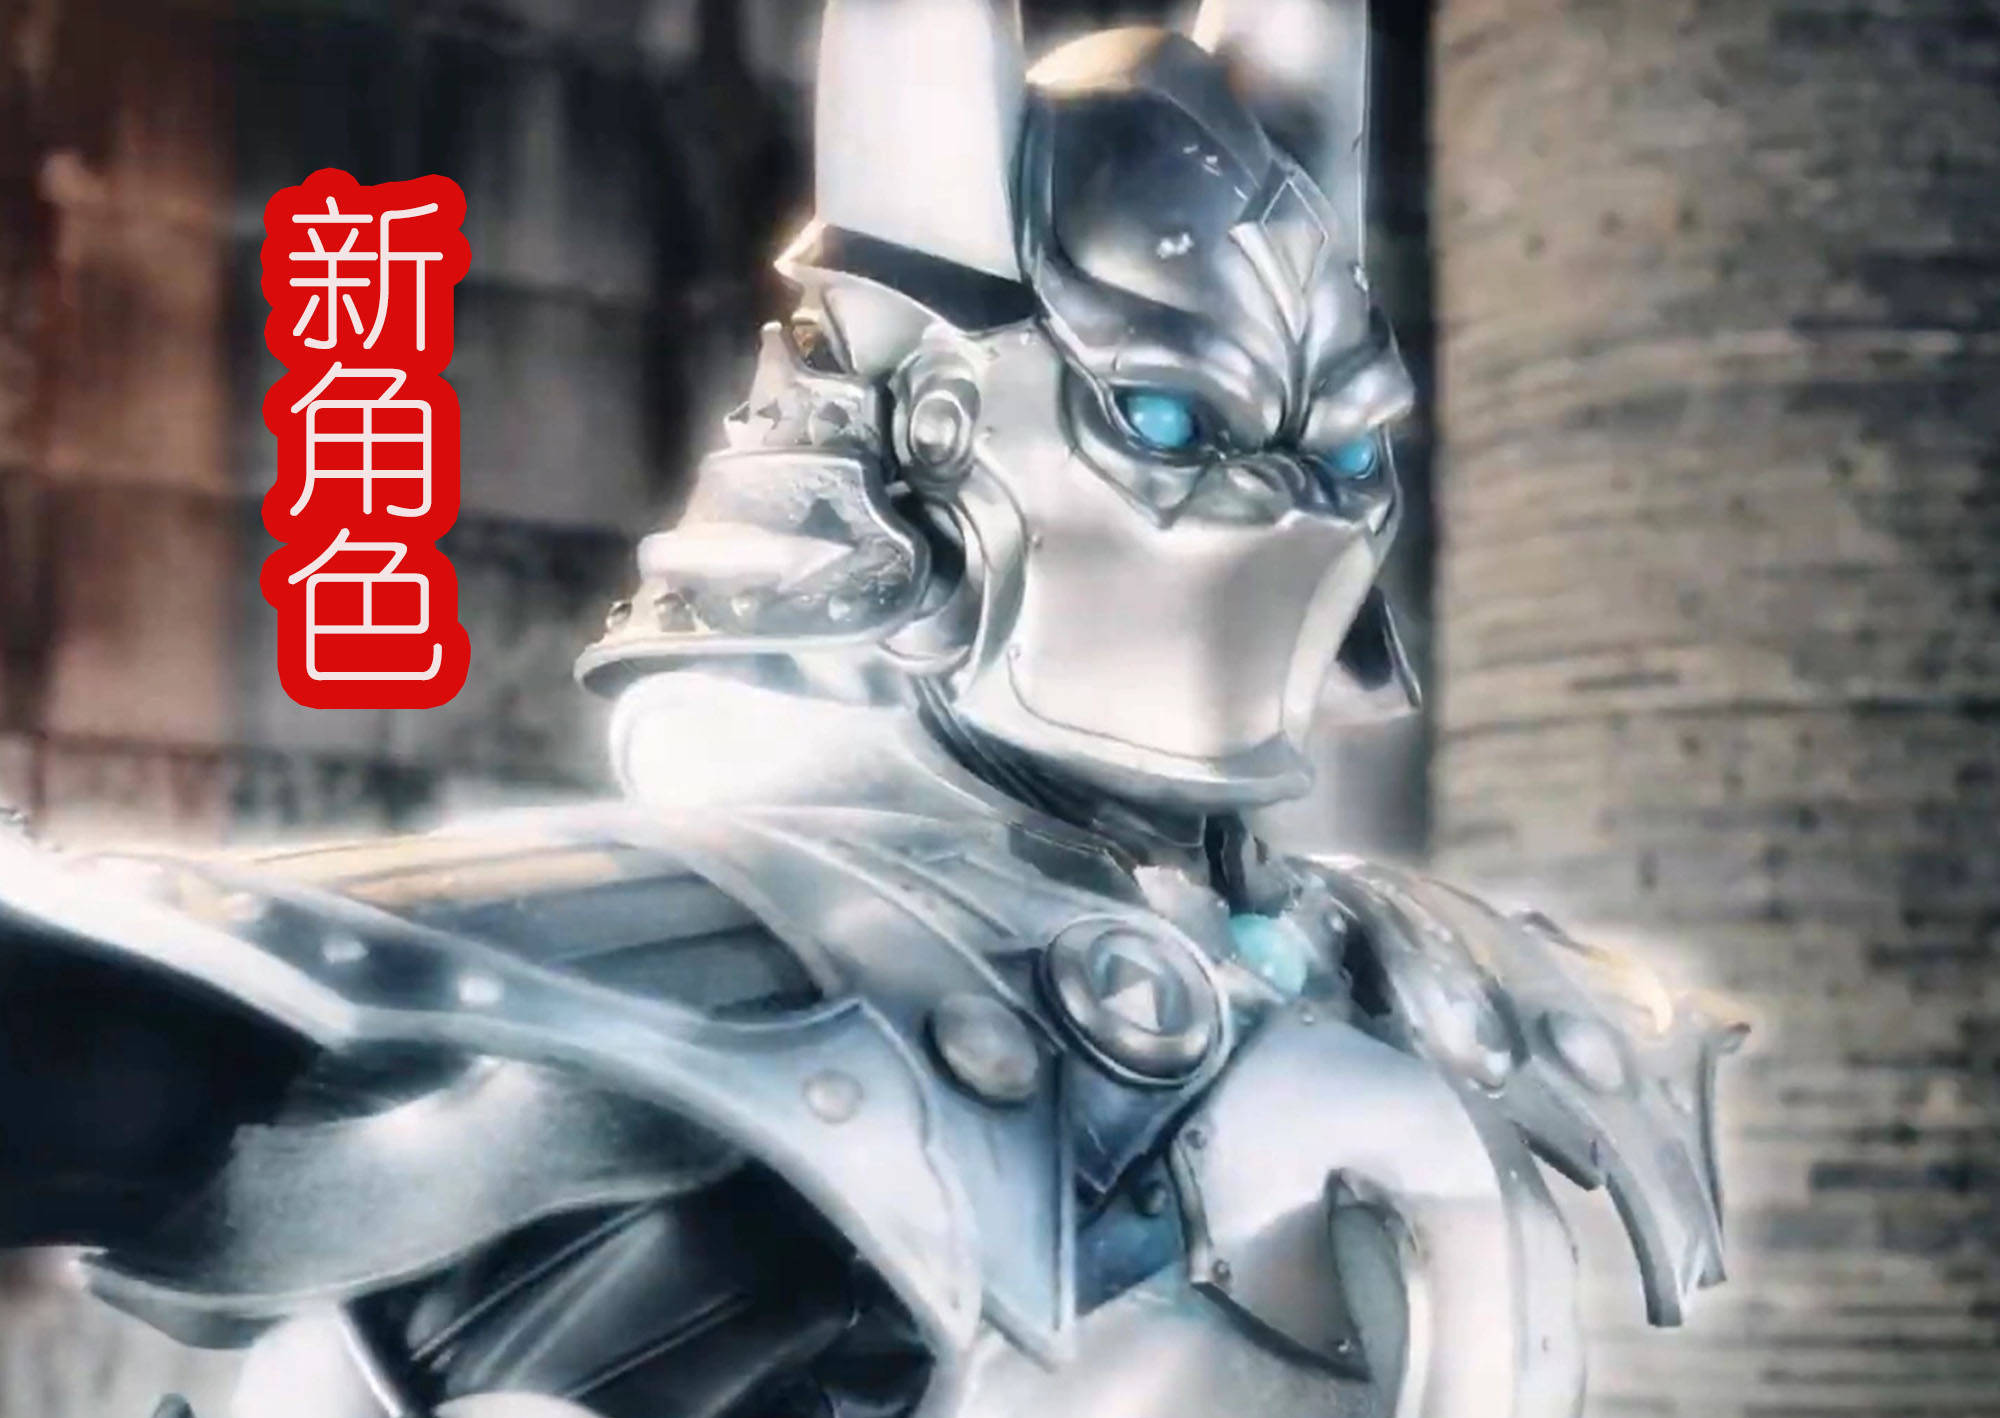 《牙狼:钢之继承者》中,将登场新角色,银色盔甲太帅了?